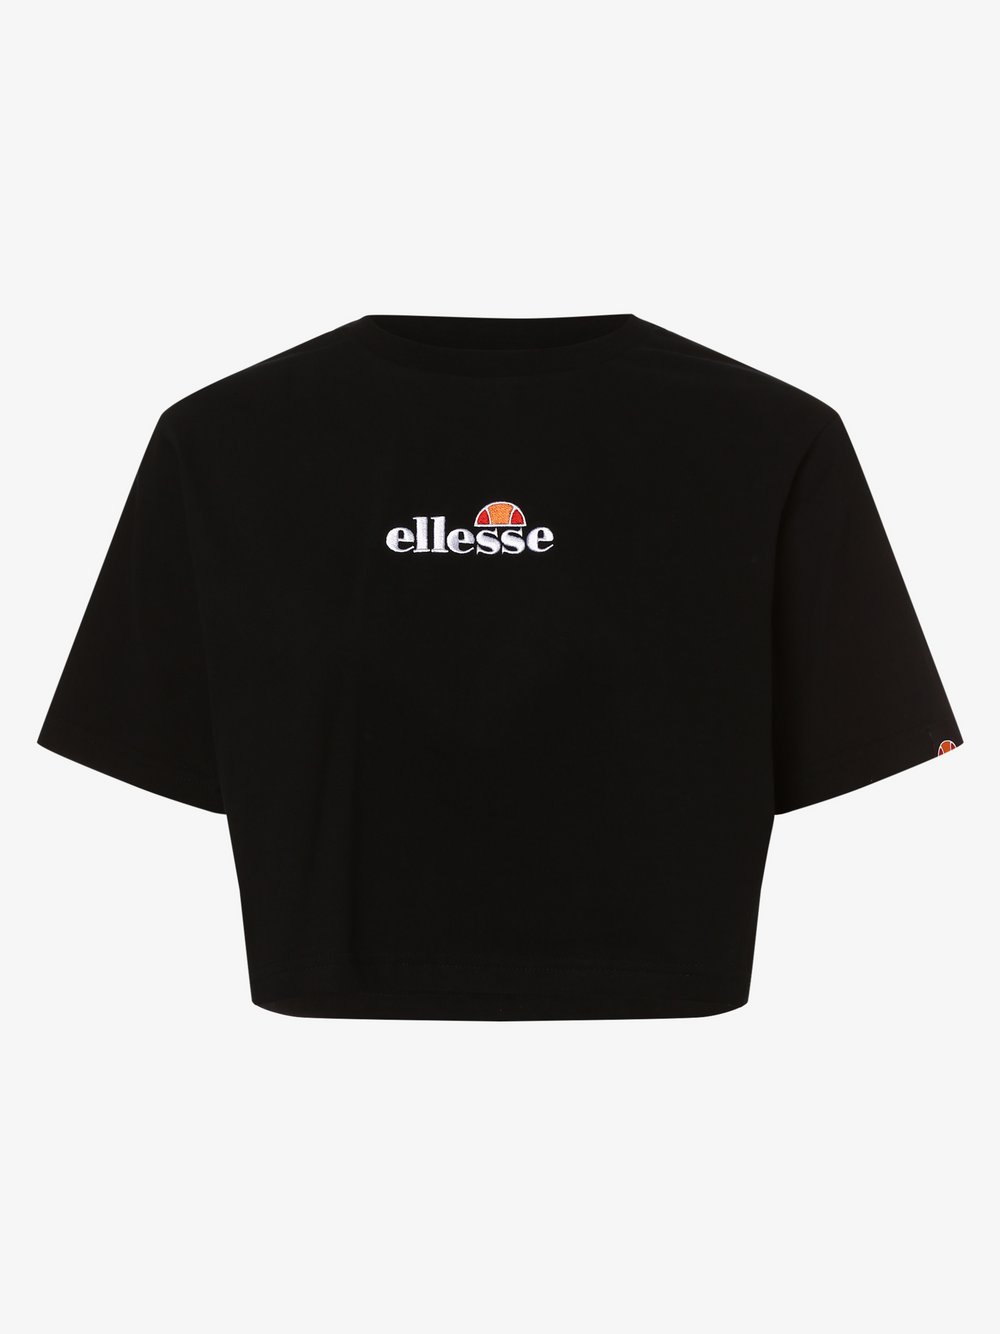 ellesse - T-shirt damski – Fireball, czarny